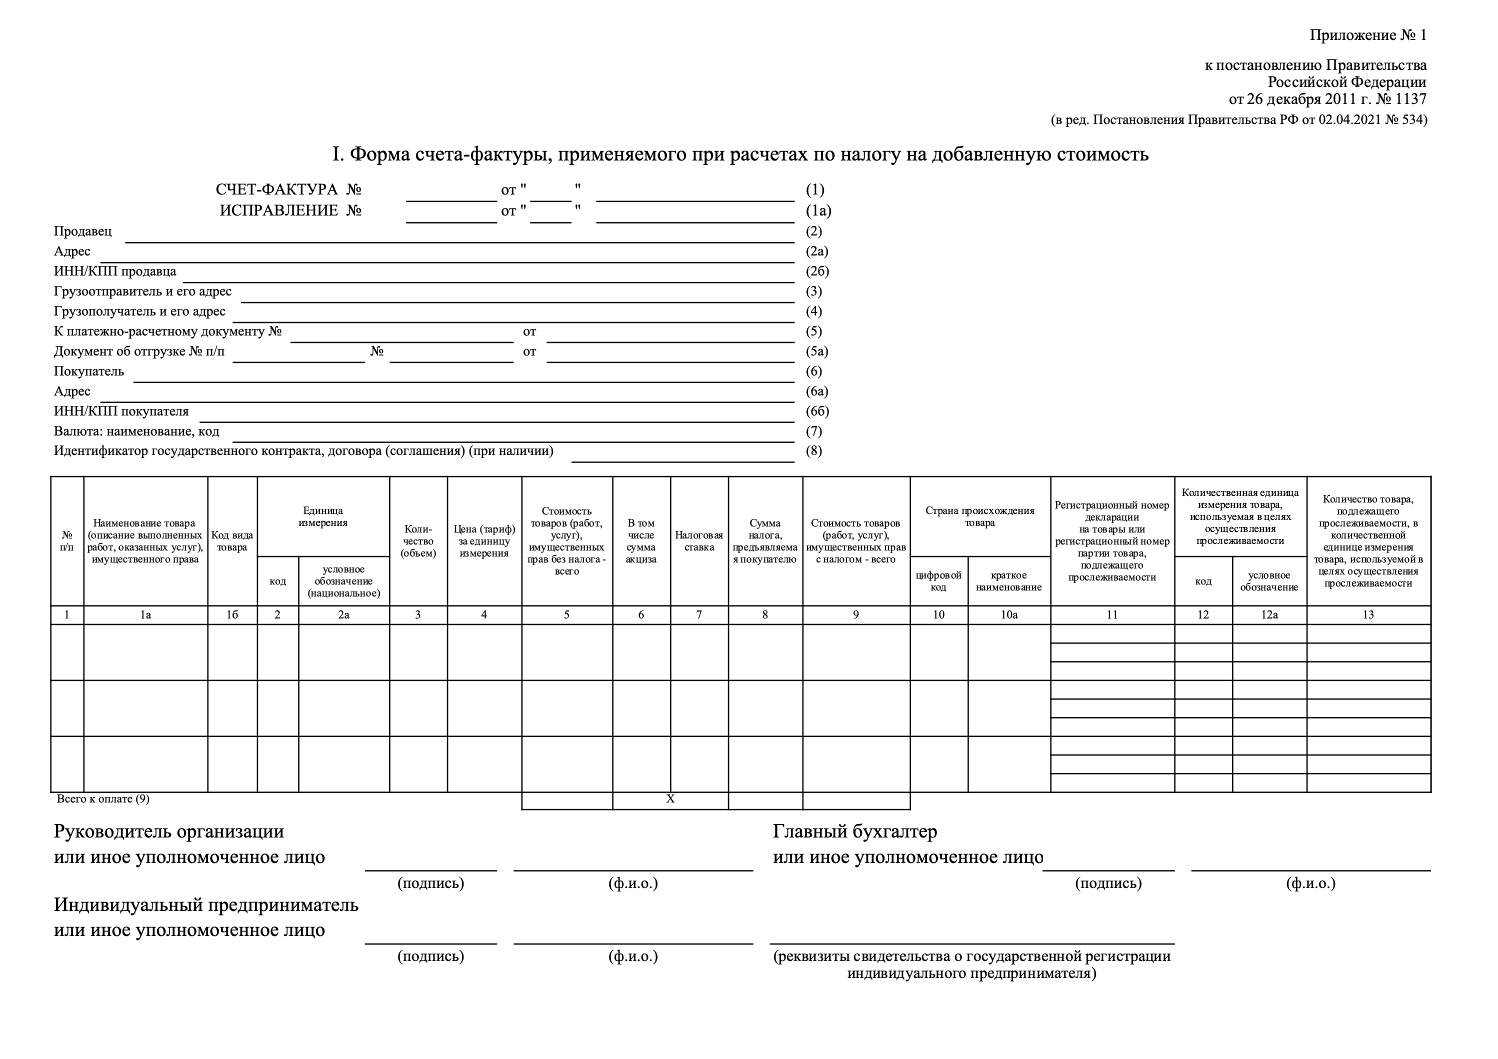 Форма счета-фактуры из постановления Правительства Российской Федерации от 26 декабря 2011 г. №1137